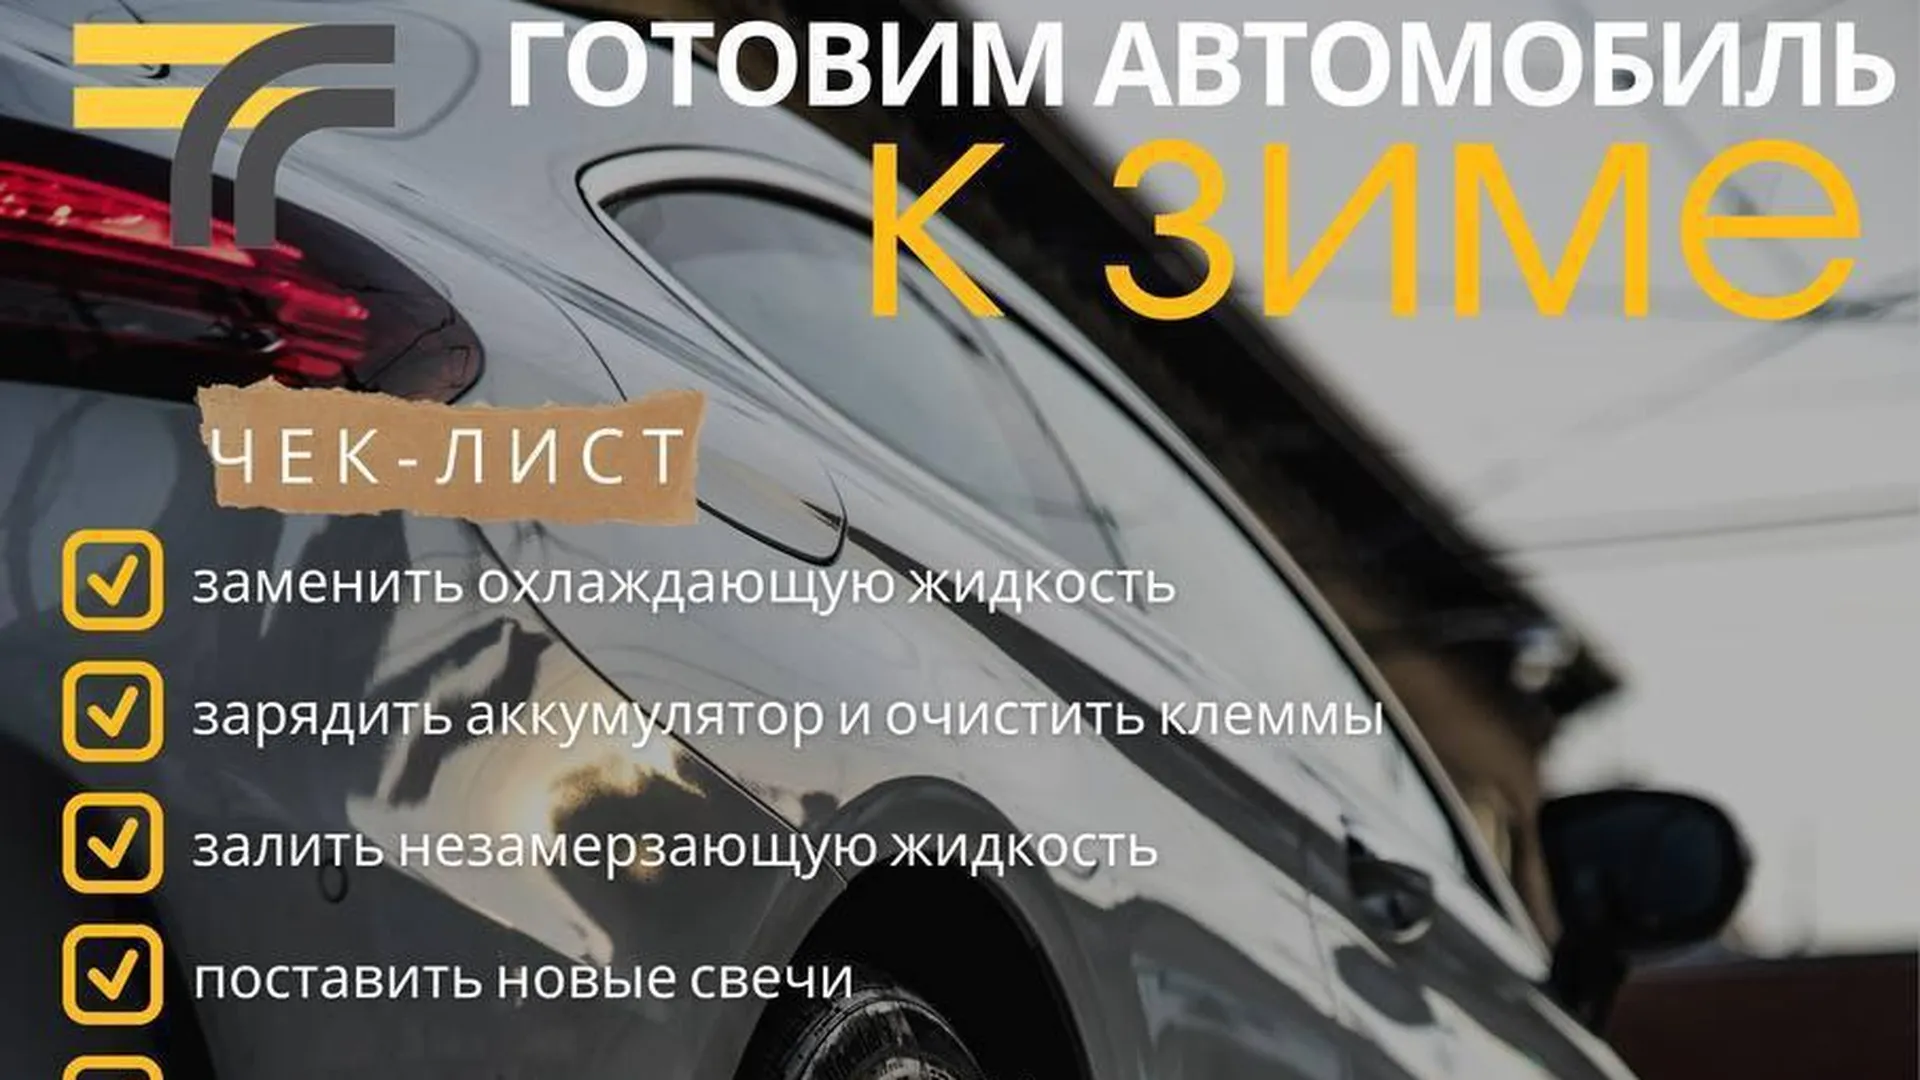 Минтранс Подмосковья призывает автомобилистов начать подготовку к зимнему сезону